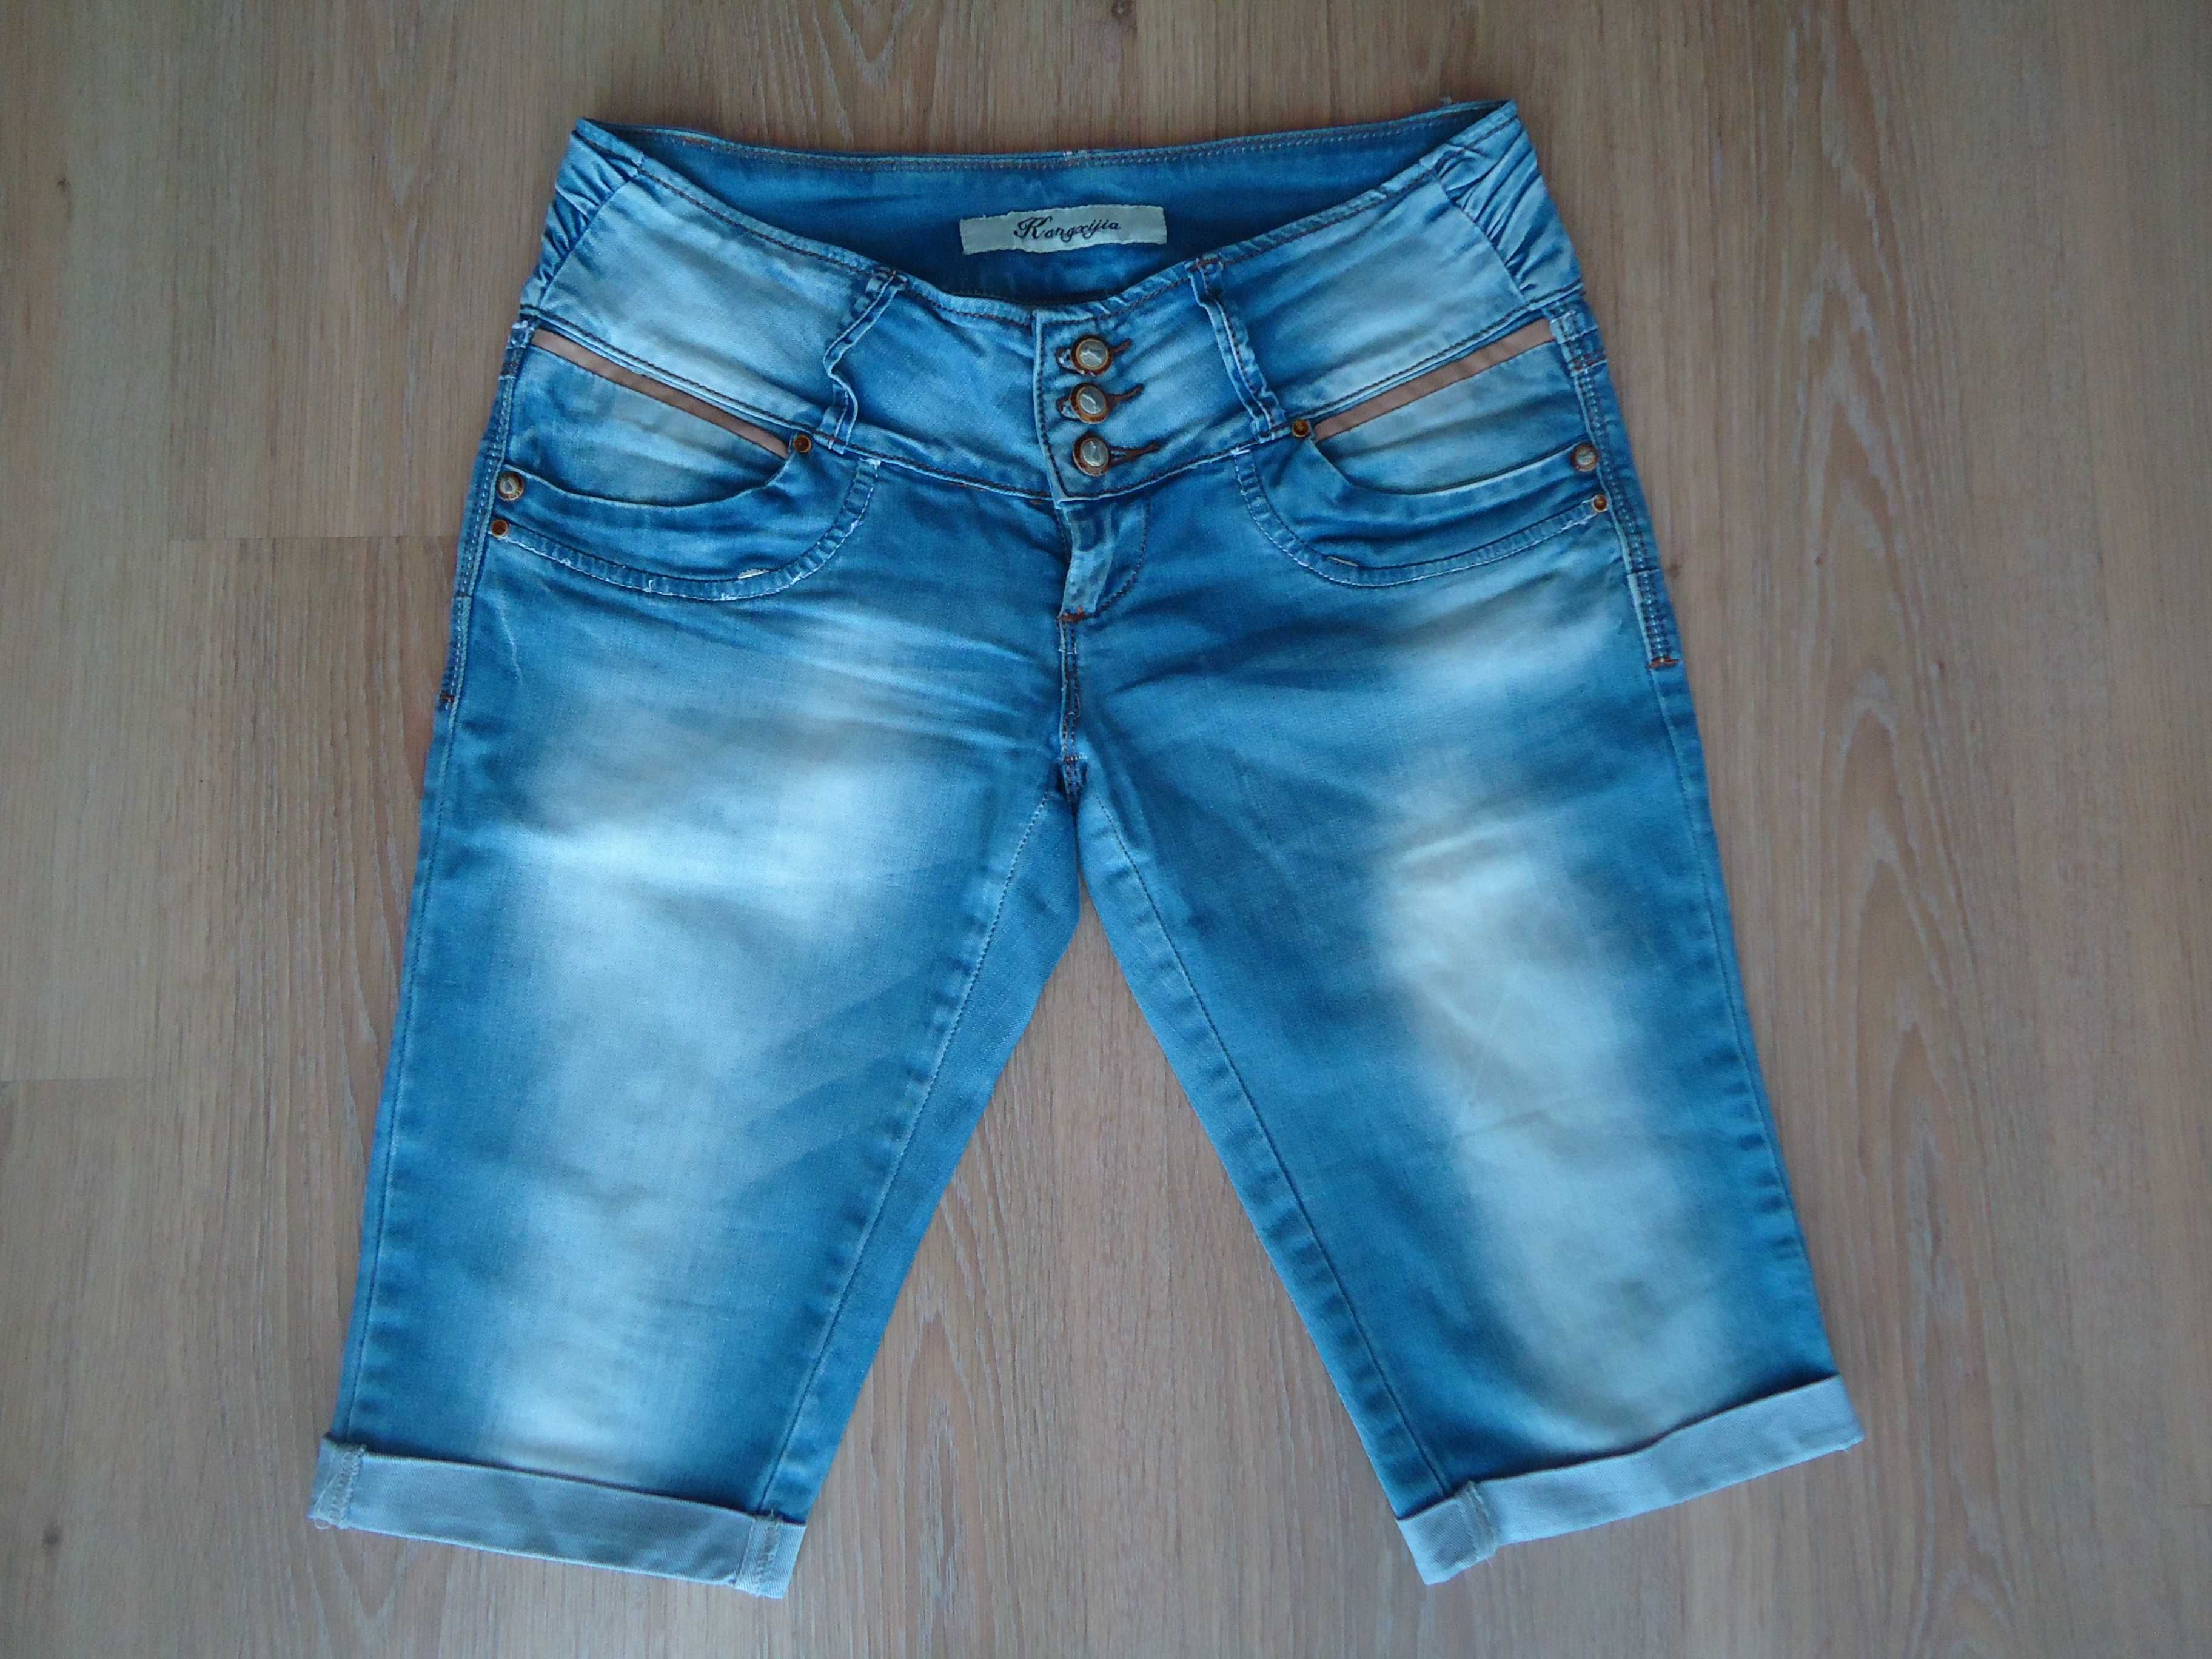 Фирменные джинсовые шорты, капри, размер 46, 100% коттон, идеальные.